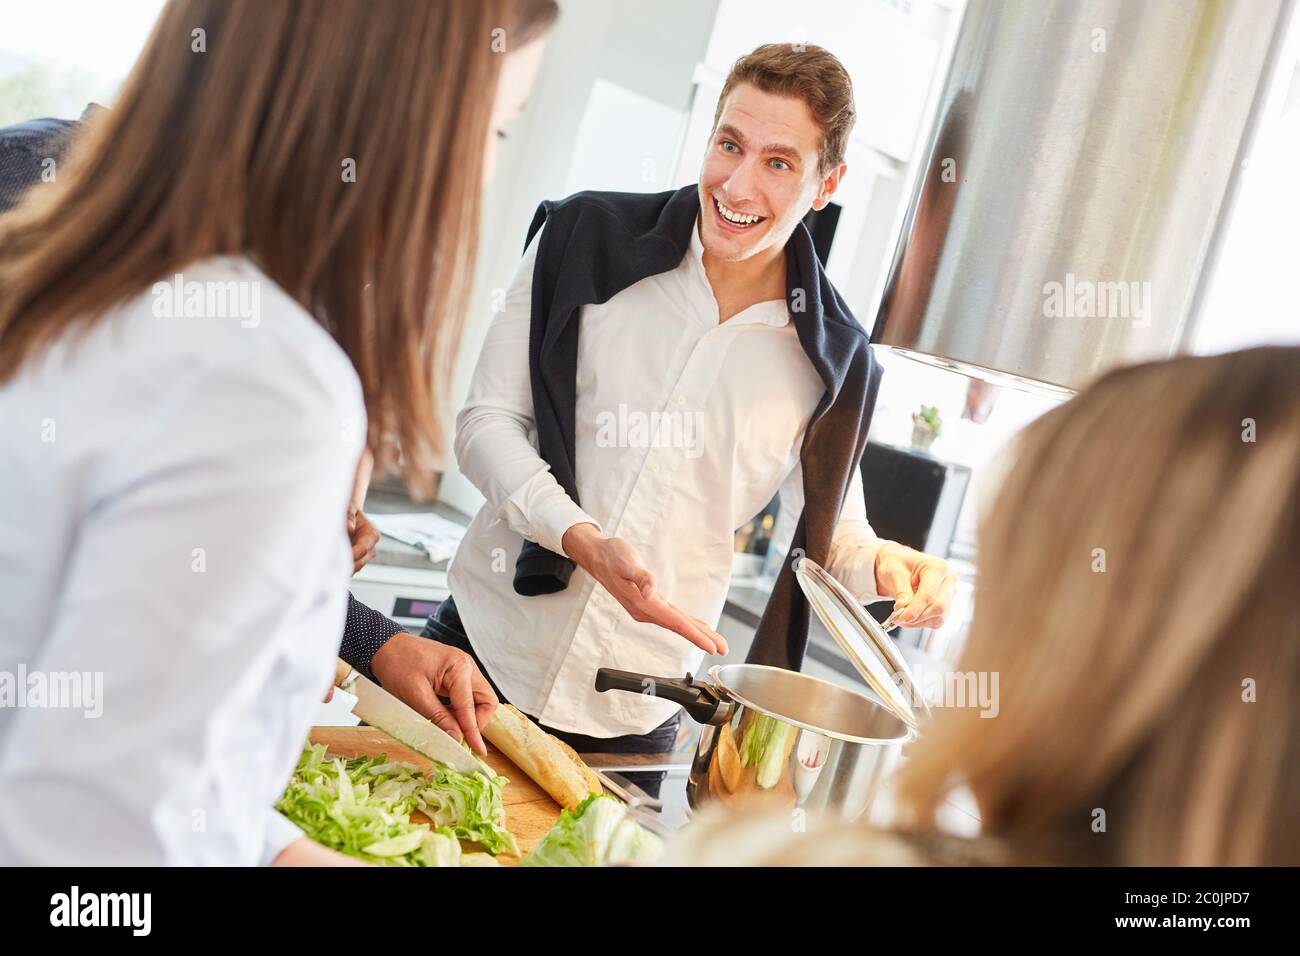 Rire les élèves préparent des repas ensemble dans une cuisine commune Banque D'Images